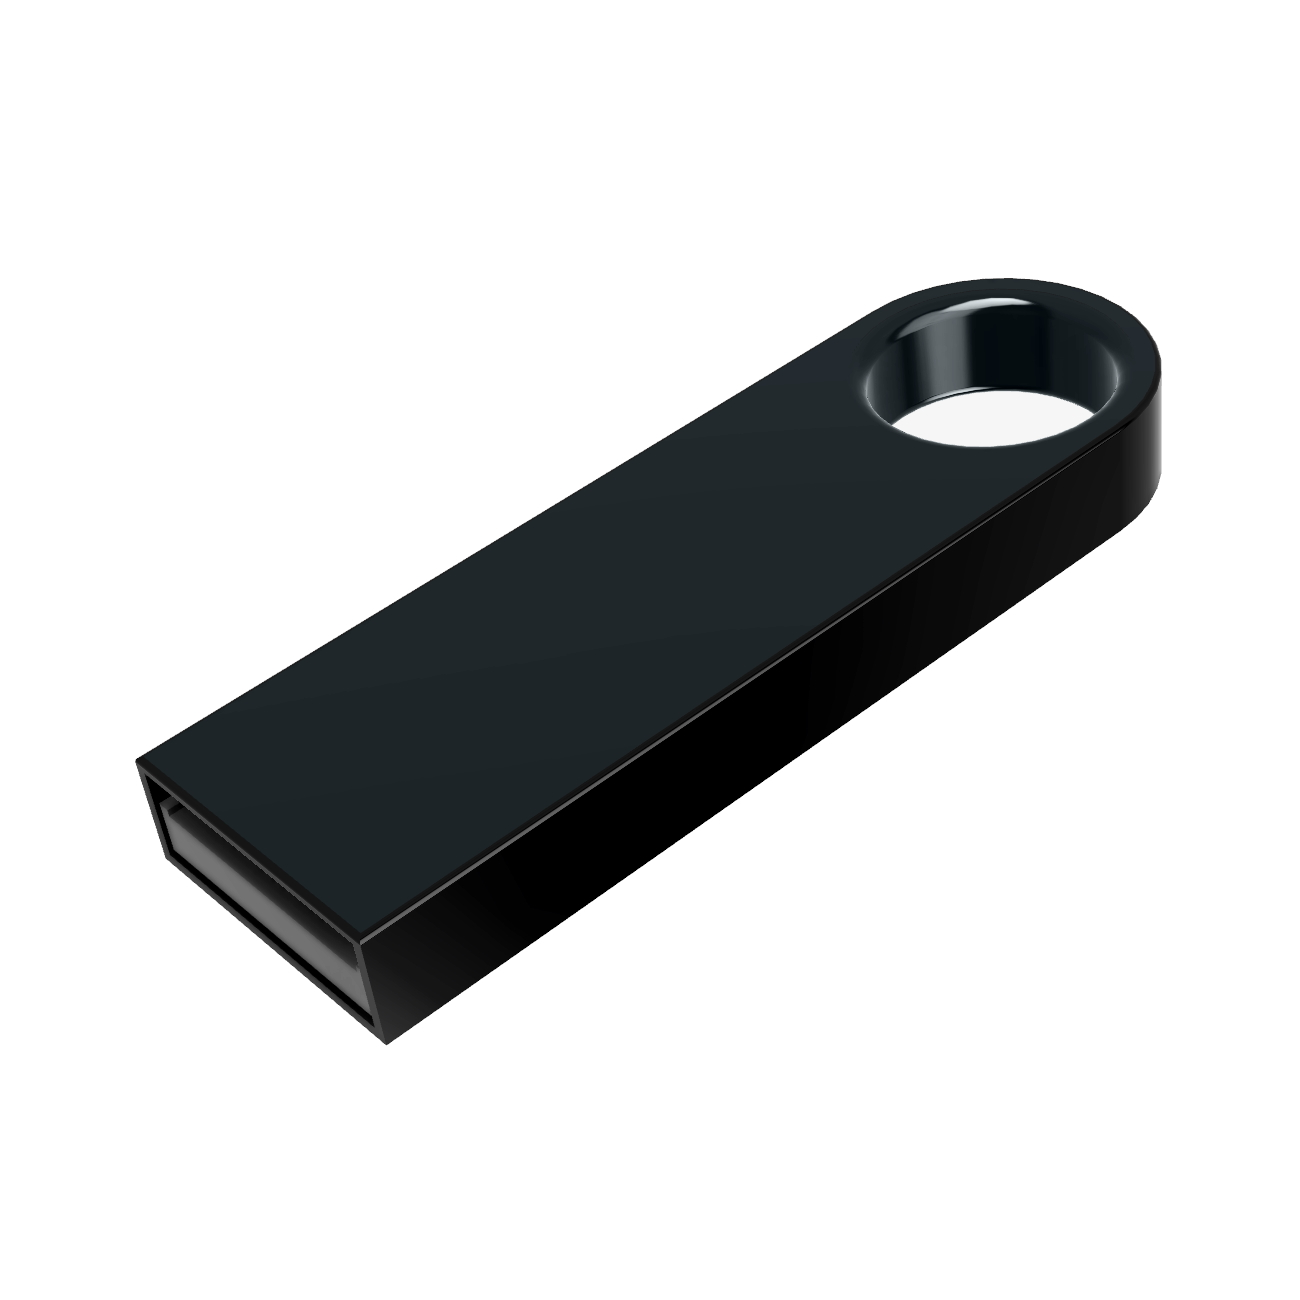 GB) USB GERMANY (Schwarz, USB-Stick ® 1 SE09